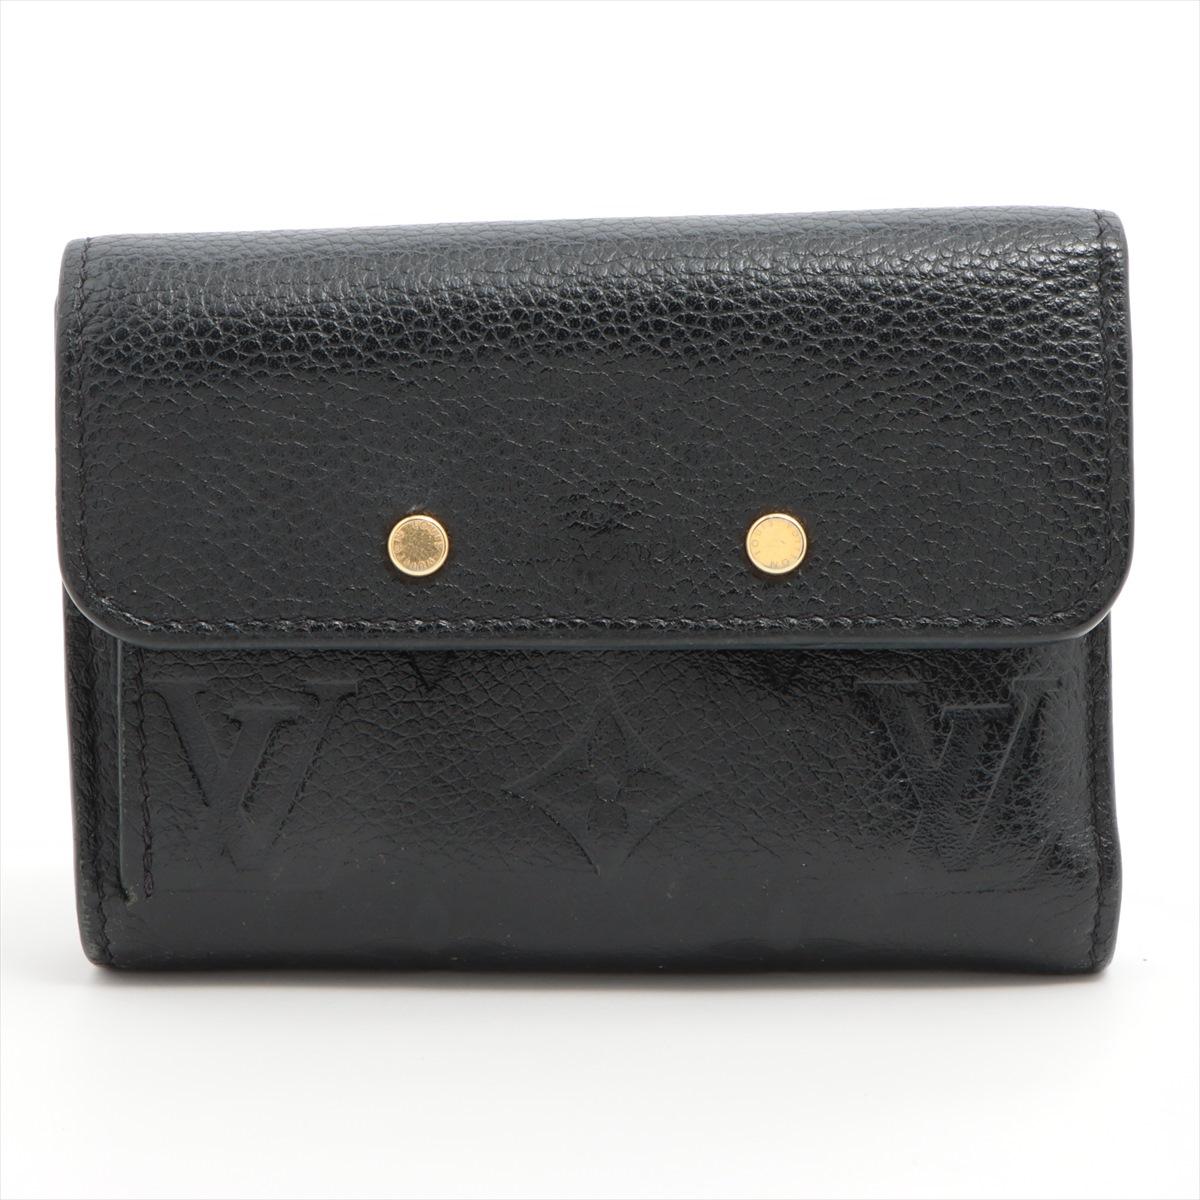 Le portefeuille trifold Monogram Empreinte Pont Neuf de Louis Vuitton en noir est un accessoire luxueux et pratique qui respire la sophistication. Confectionné en cuir souple Monogram Empreinte, ce portefeuille arbore une teinte noire épurée qui